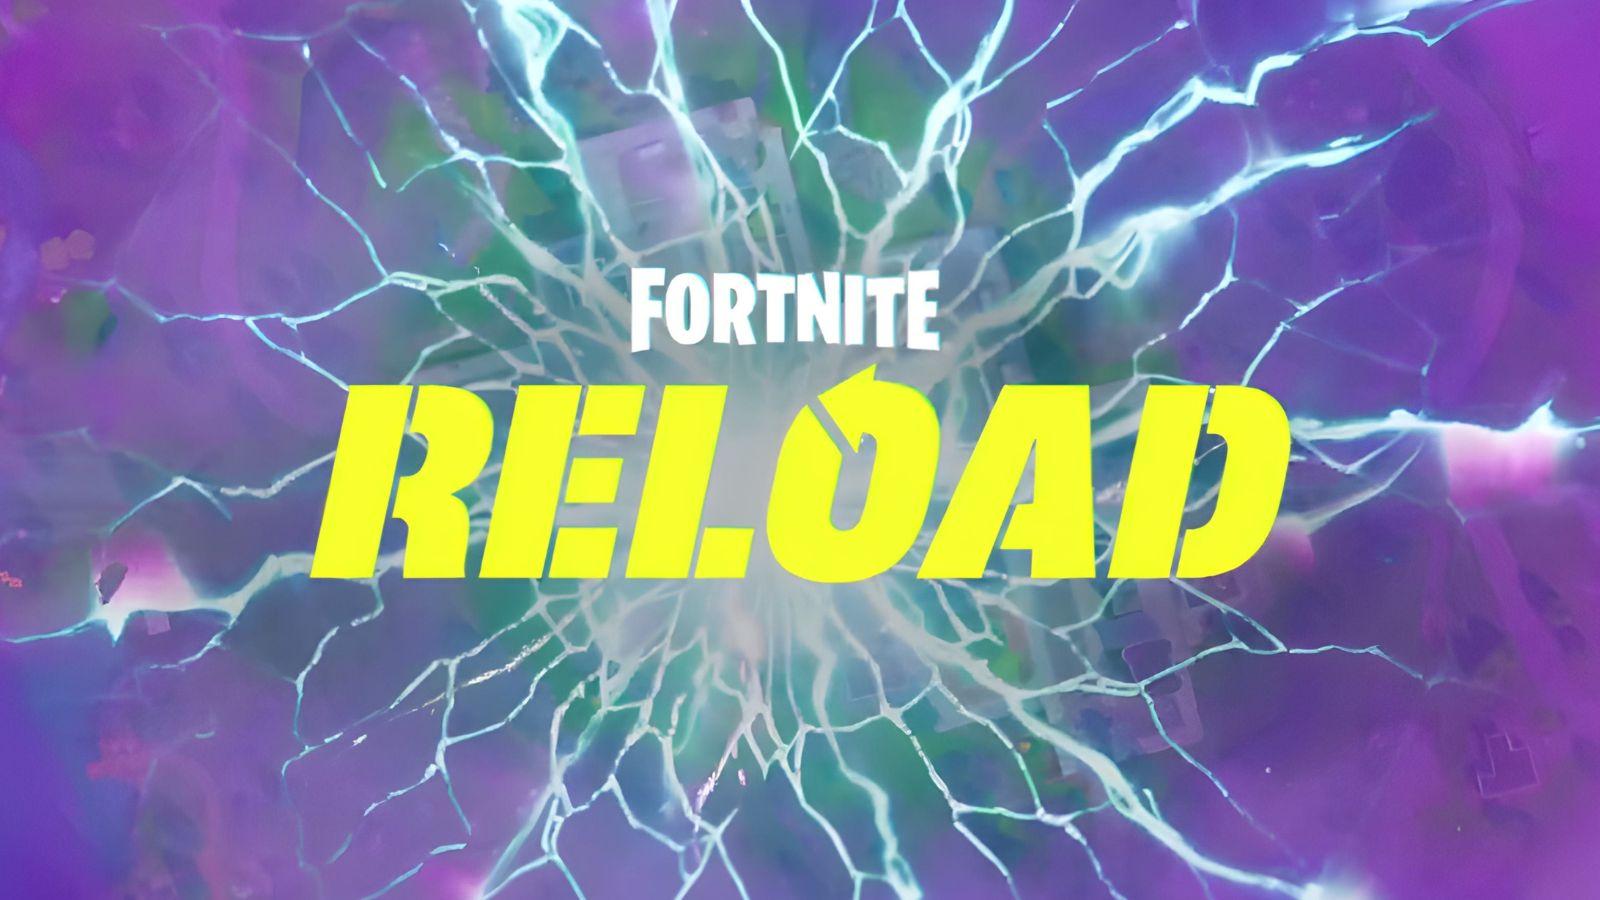 Fortnite Reload title